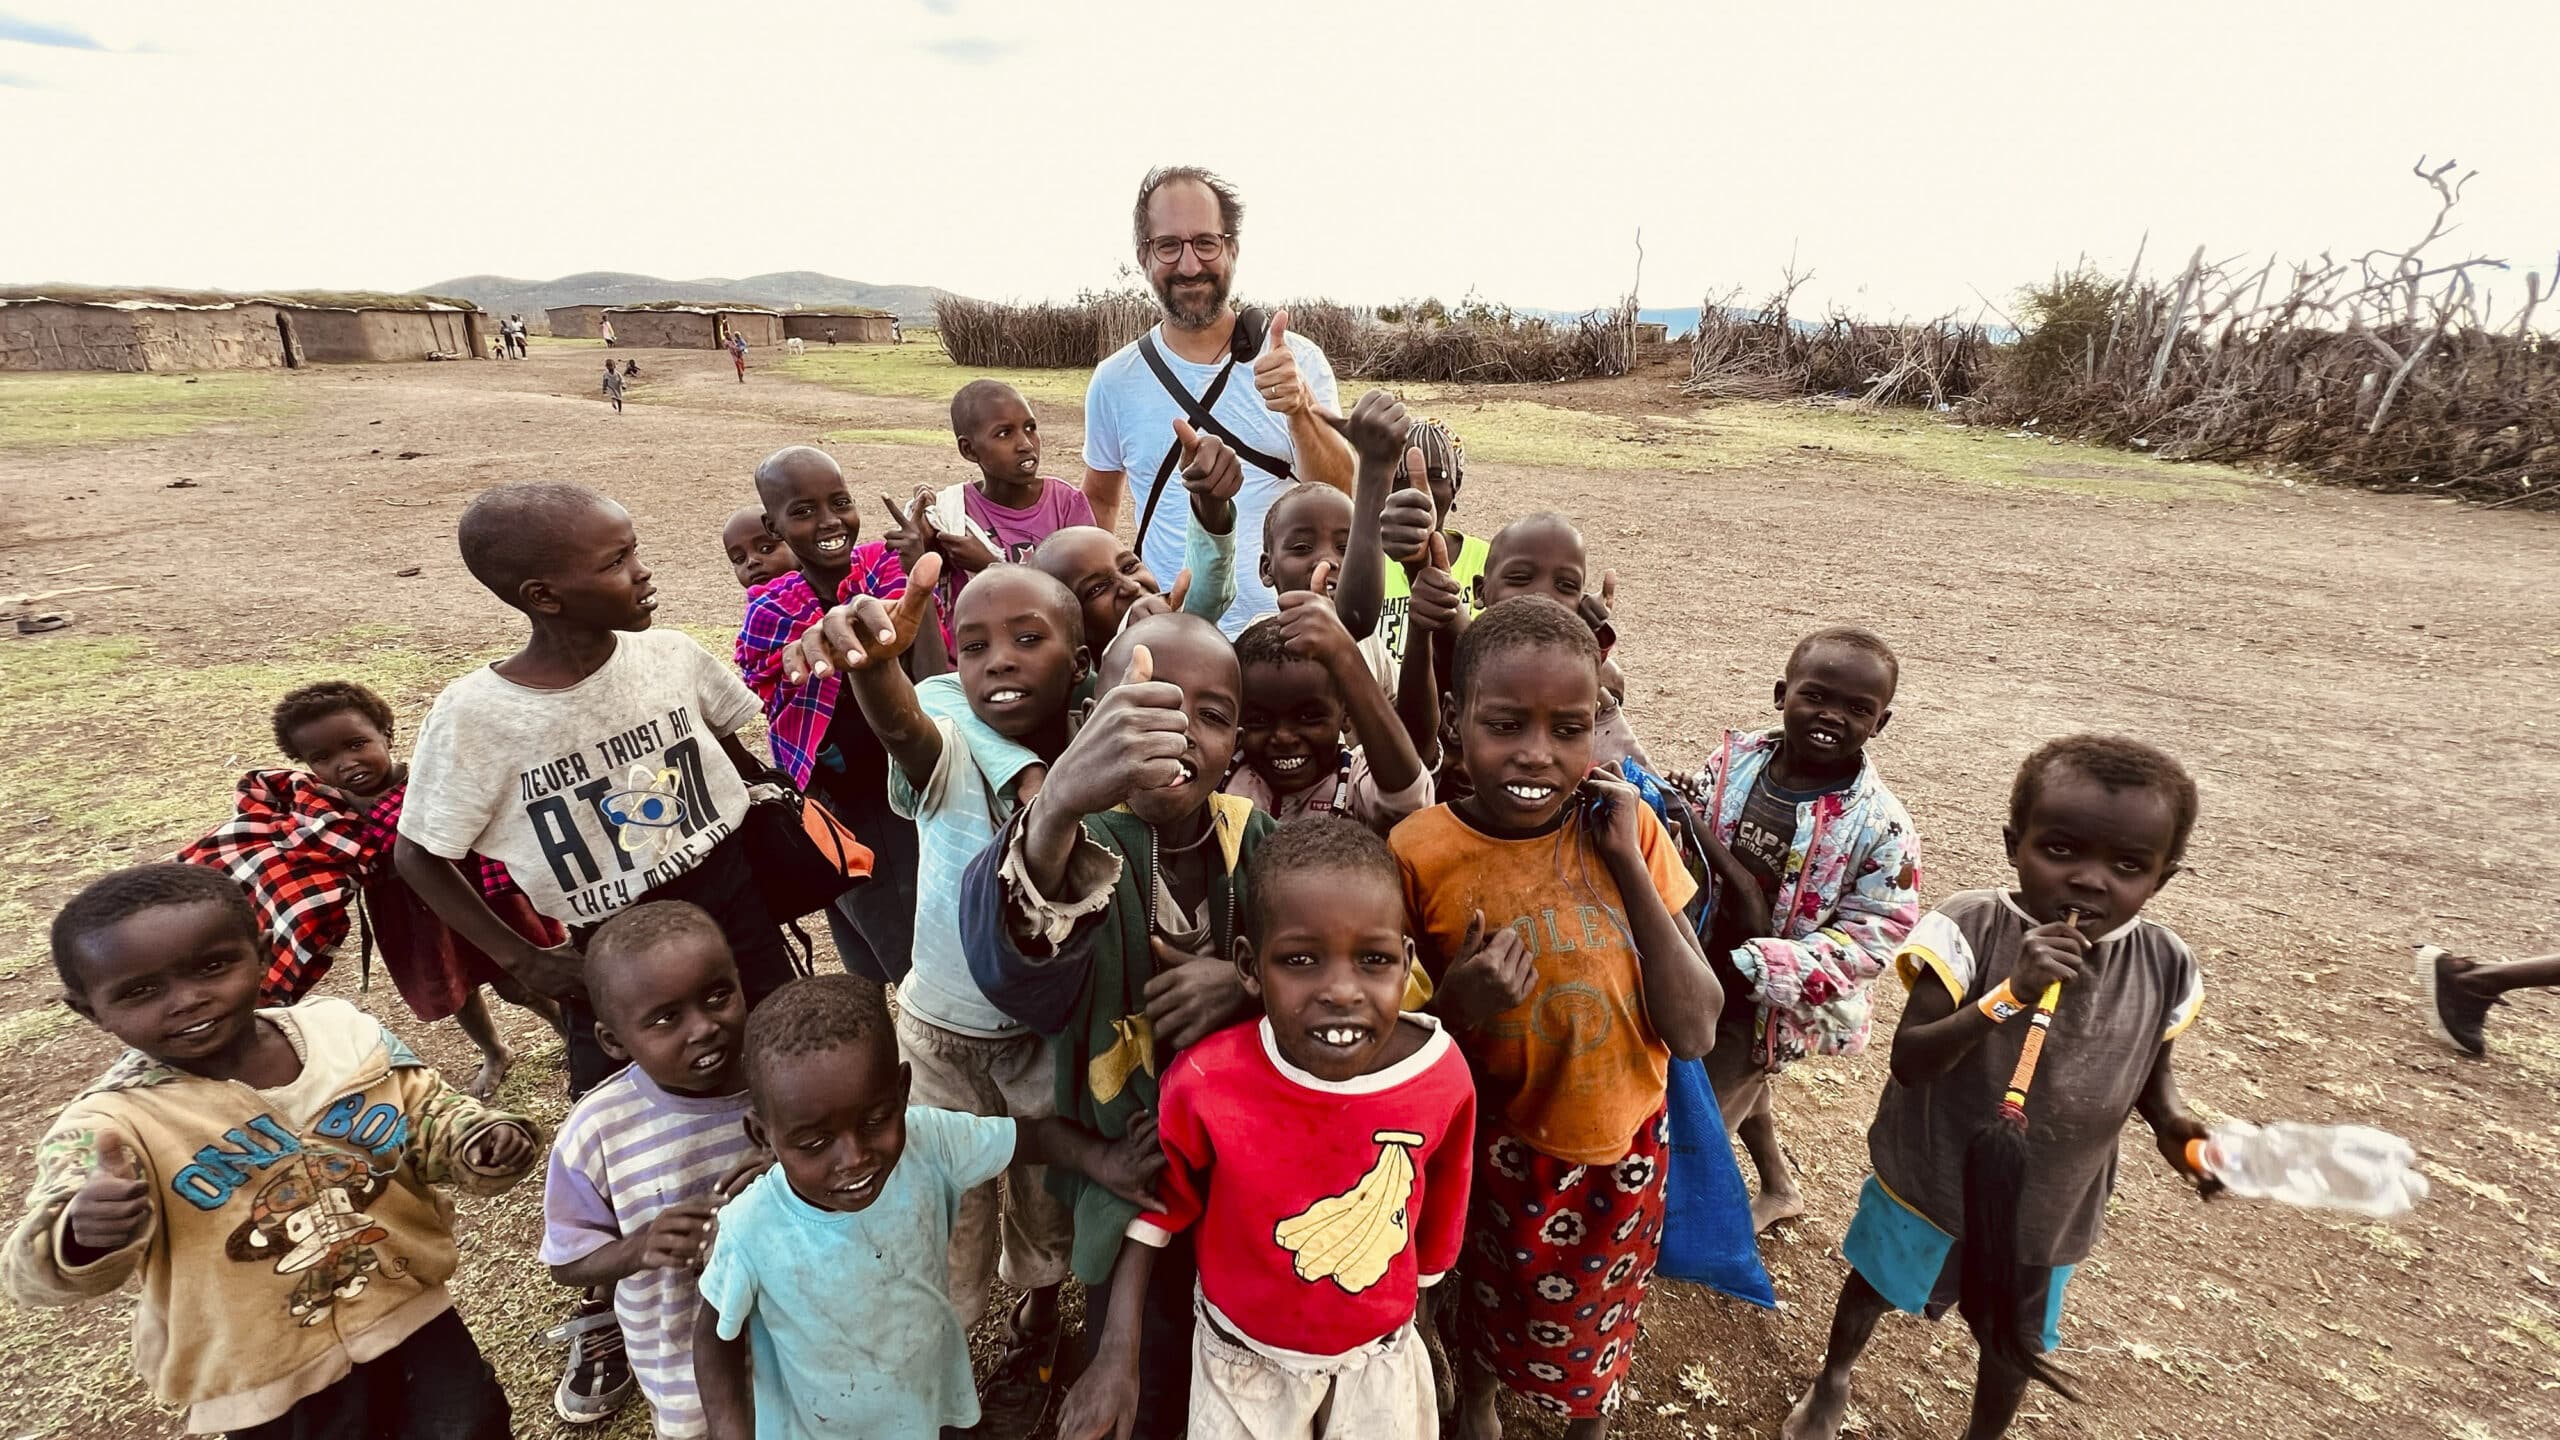 Ein Mann steht umgeben von einer Gruppe fröhlicher Kinder in einer ländlichen, trockenen Landschaft. Sie alle lächeln in die Kamera, einige winken, im Hintergrund sind offene Felder und ein paar Bäume zu sehen. © Fotografie Tomas Rodriguez